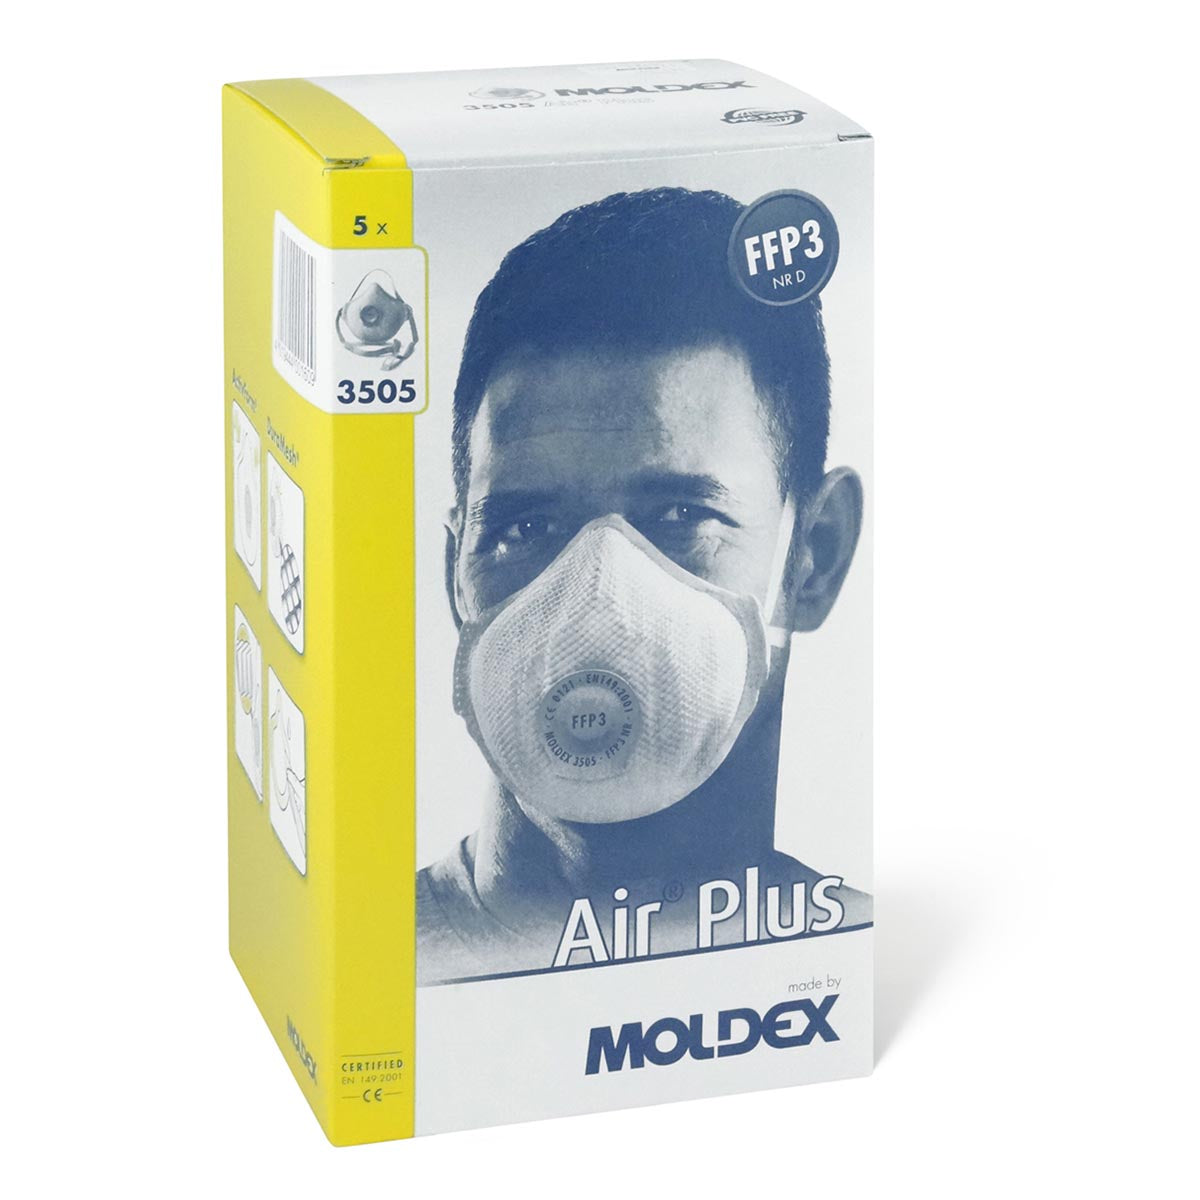 Moldex 3505 FFP3 Air Plus NR D Masks